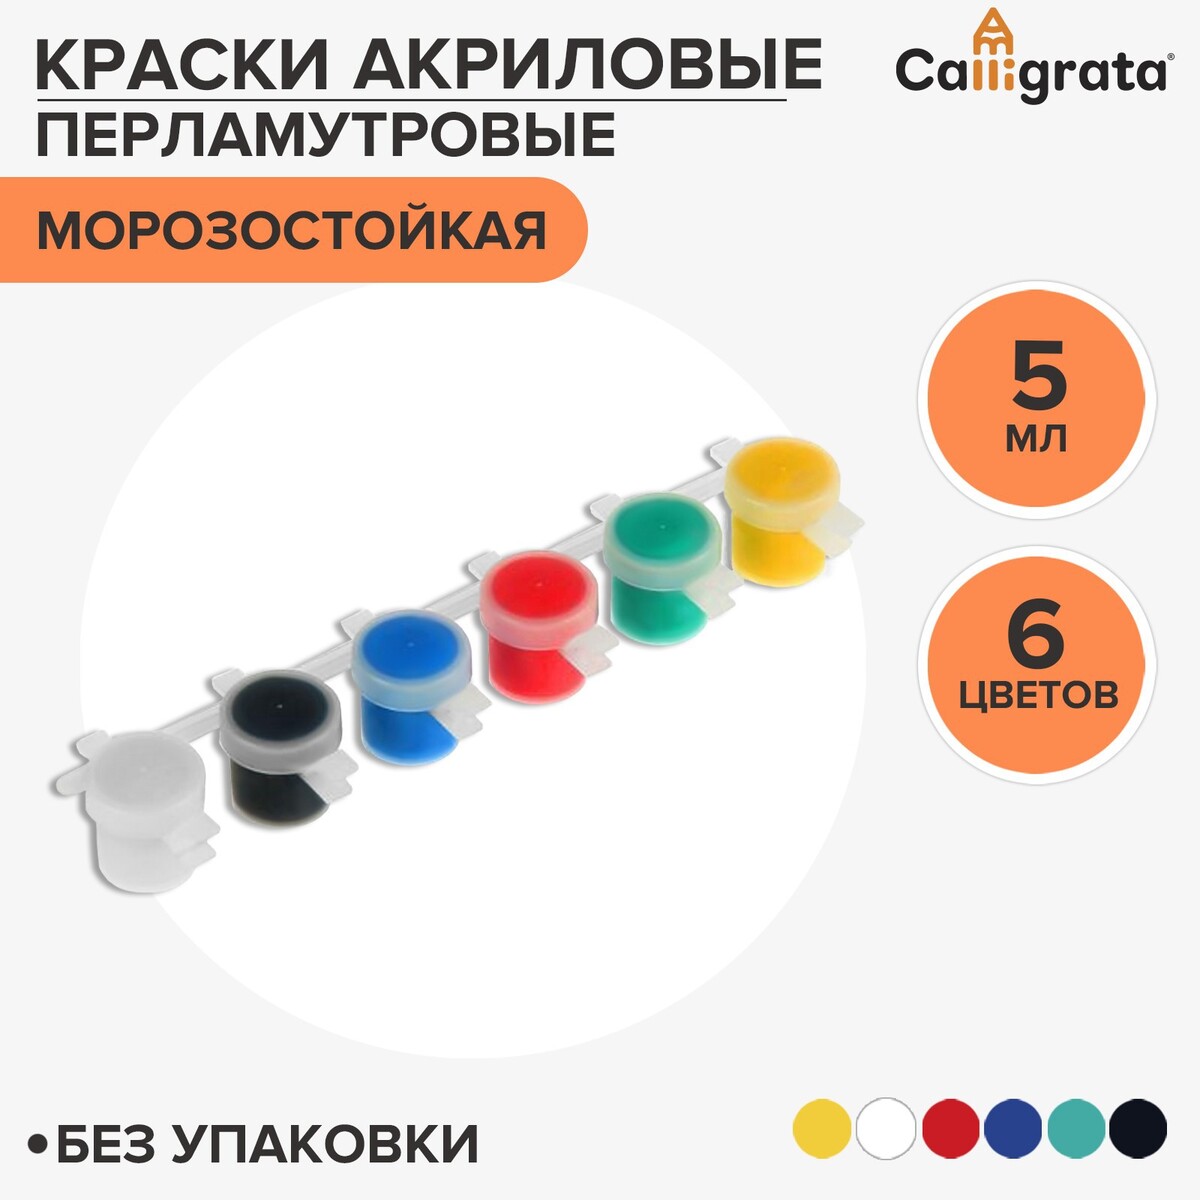 Краска акриловая, набор 6 цветов х 5 мл, wizzart kid pearl, перламутровые (повышенное содержание пигмента), морозостойкие акриловая краска для моделизма для моделизма оранжевая матовая